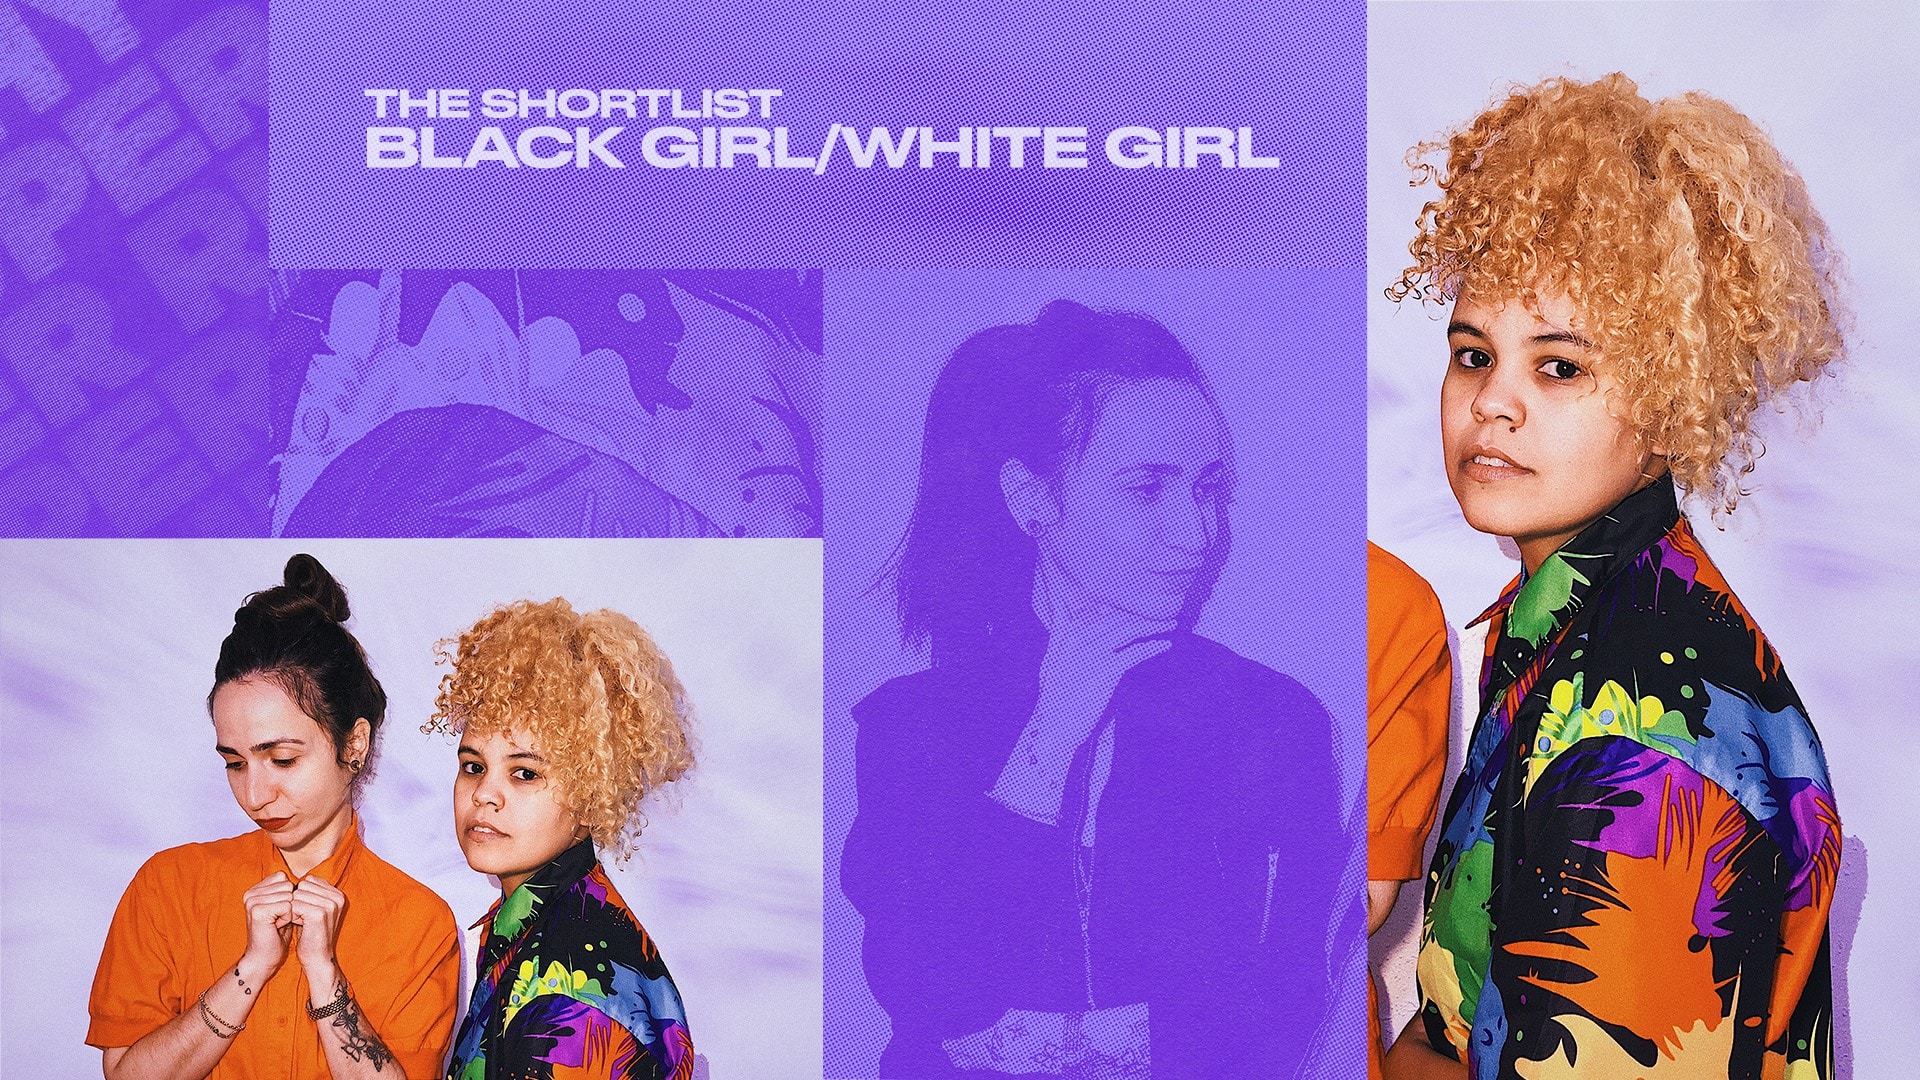 black girl/white girl